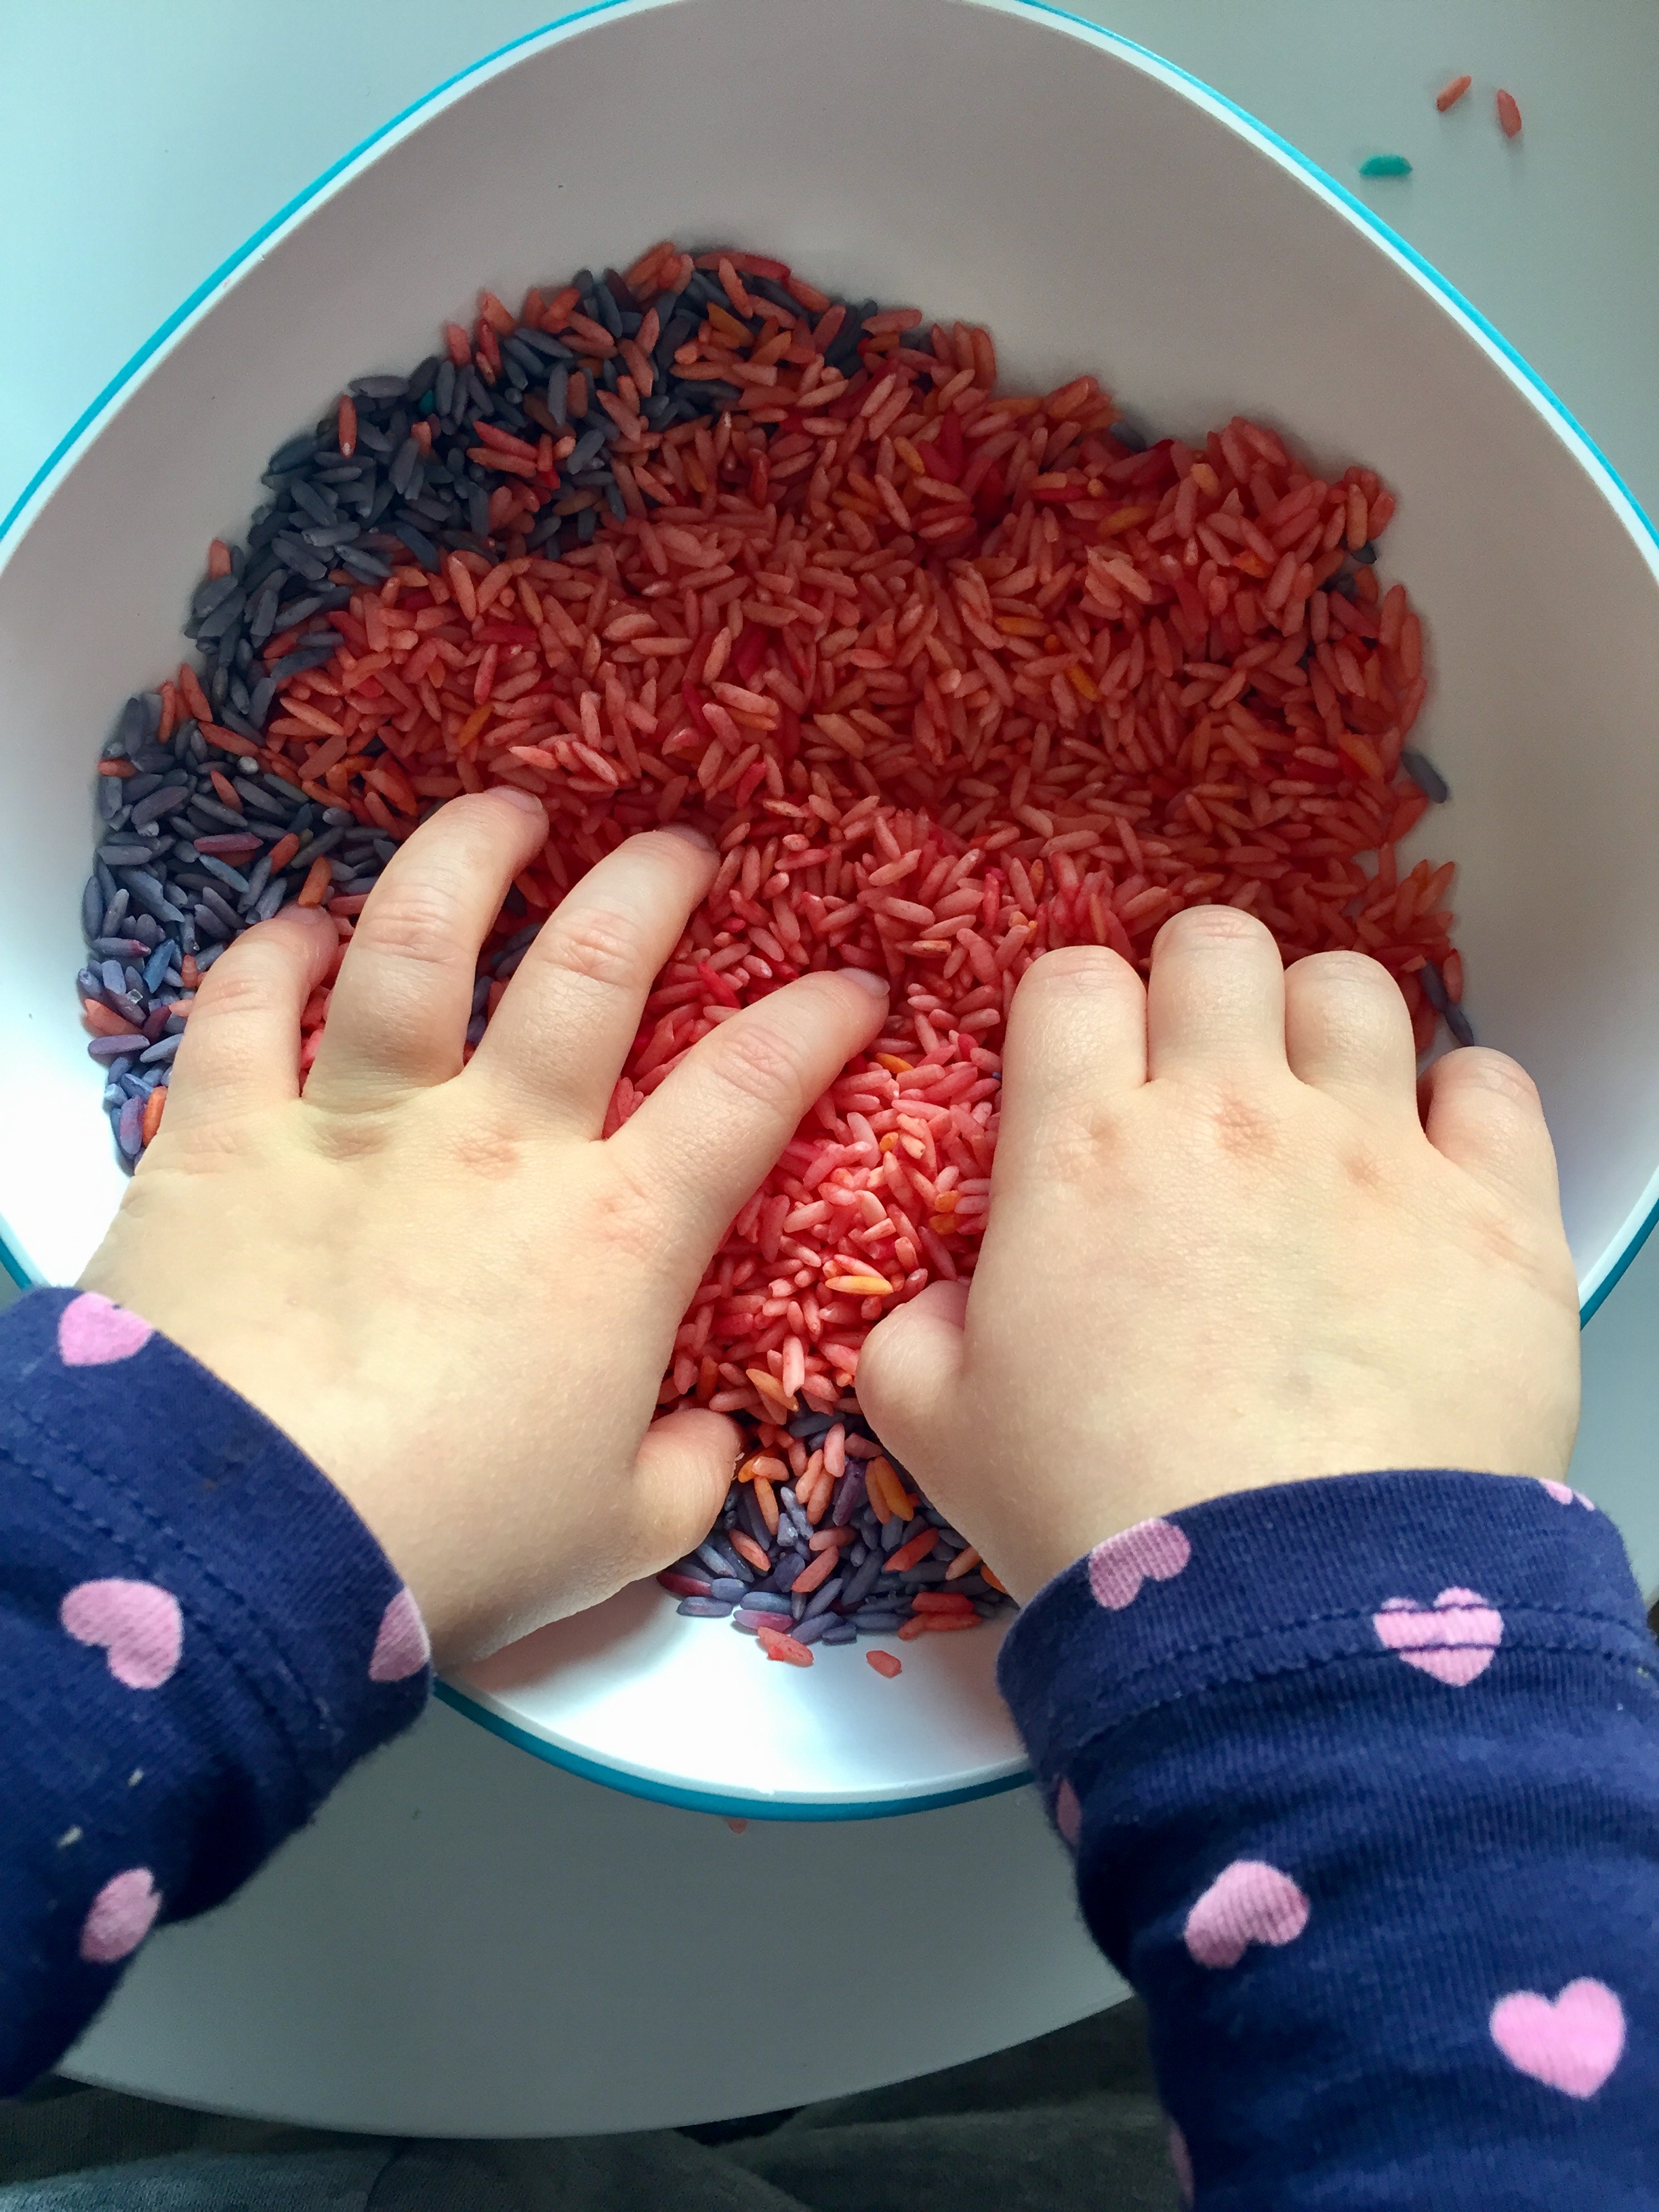 Bébé met ses mains dans du riz coloré